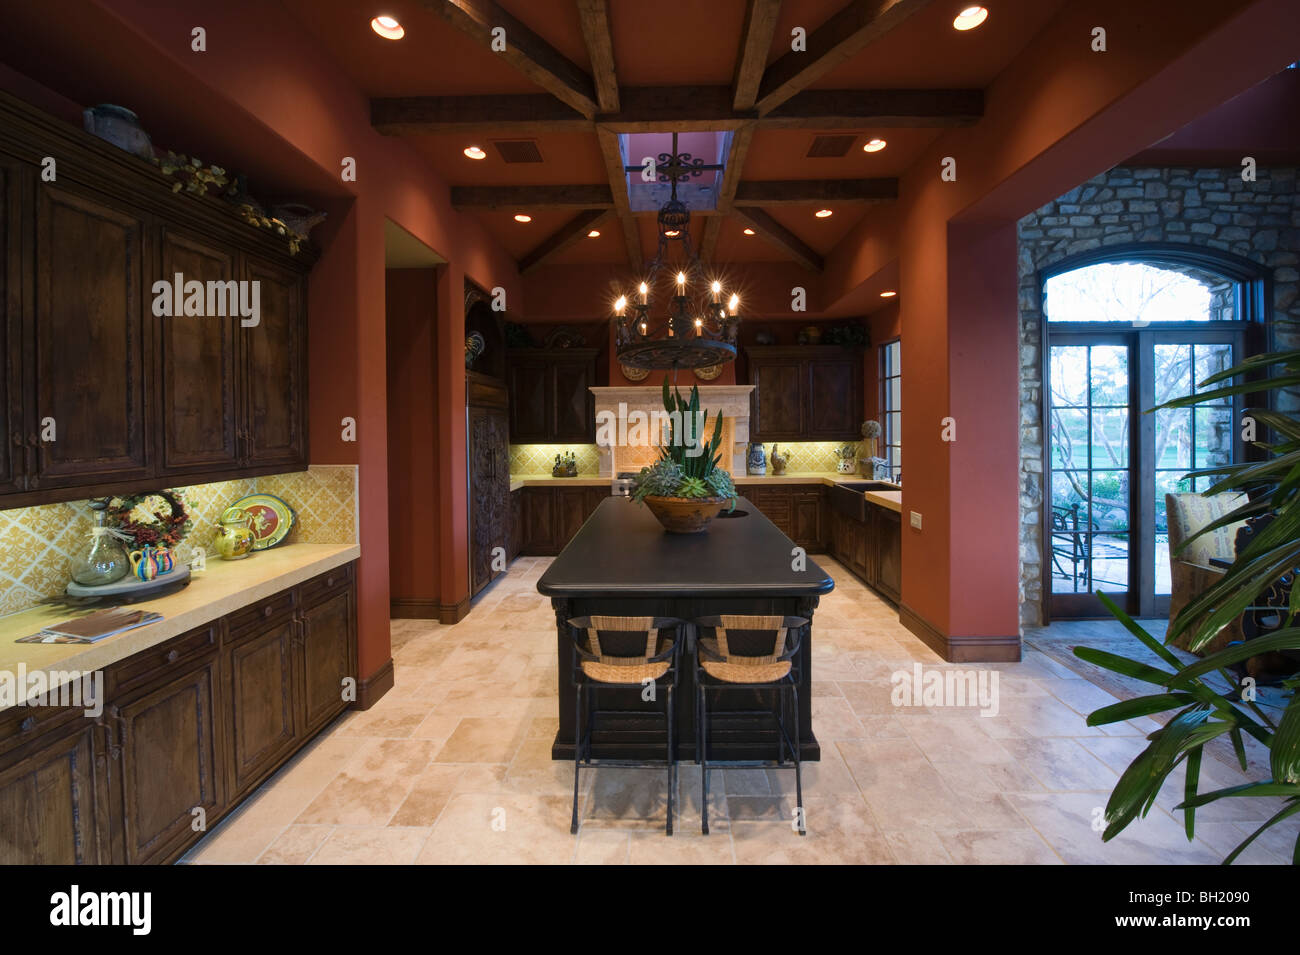 En bois et des poutres au plafond de Palm Springs cuisine intérieur Banque D'Images